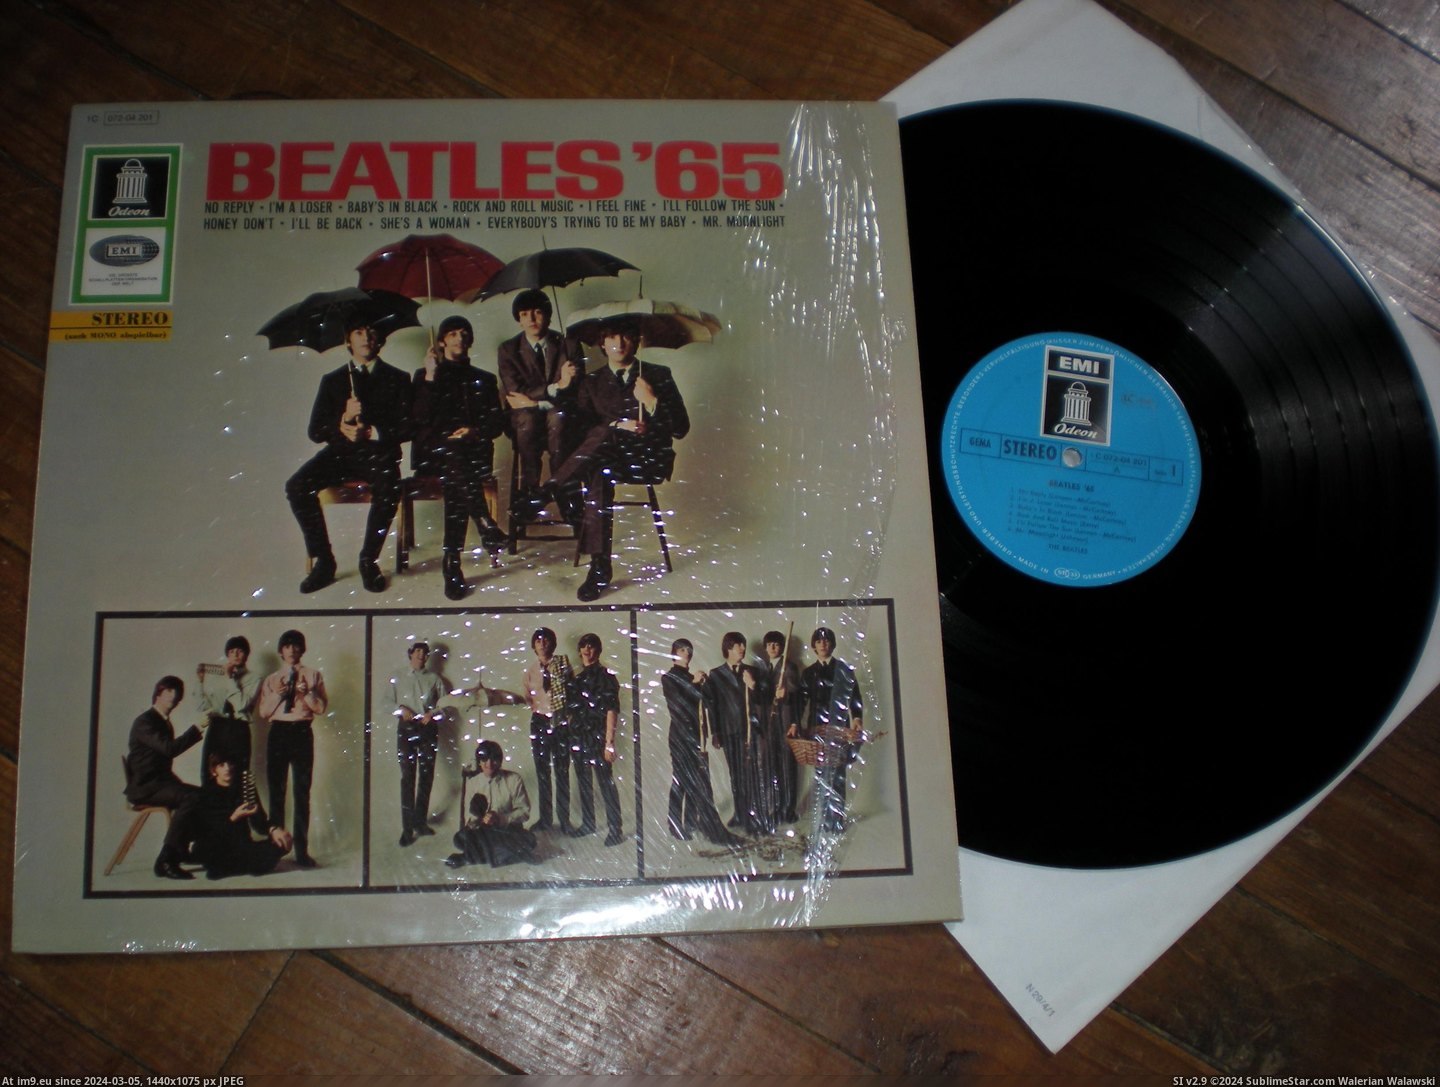  #Beatles  Beatles 65 6 Pic. (Изображение из альбом new 1))